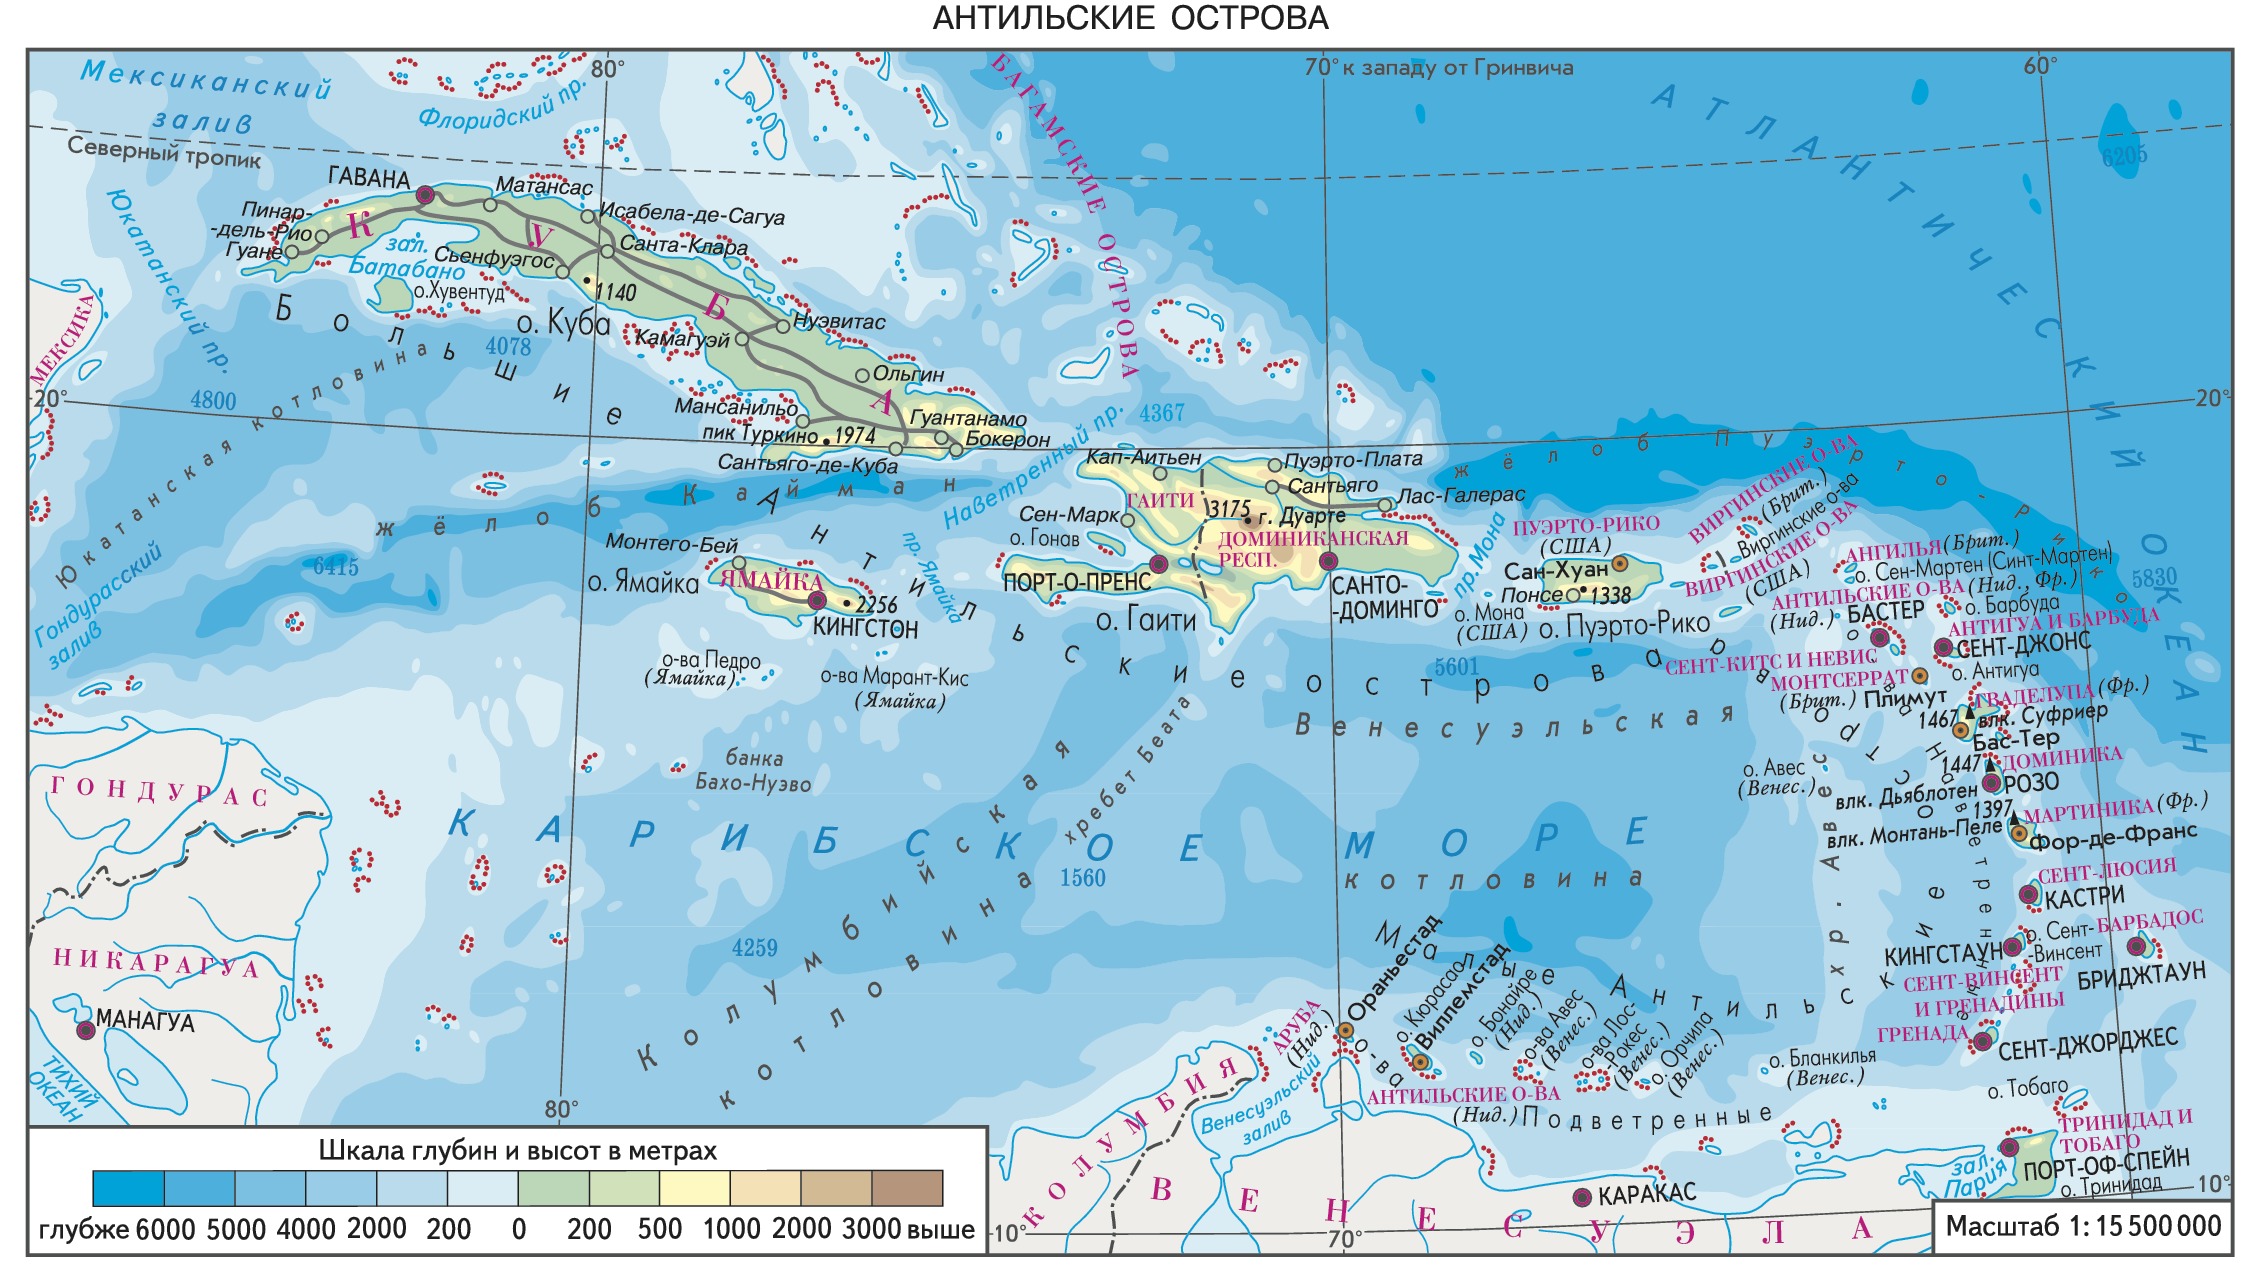 Южная часть архипелага малых антильских островов. Большие и малые Антильские острова на карте. Архипелаг большие Антильские острова на карте. Большие Антильские острова на карте океанов. Малые Антильские острова на физической карте Южной Америки.